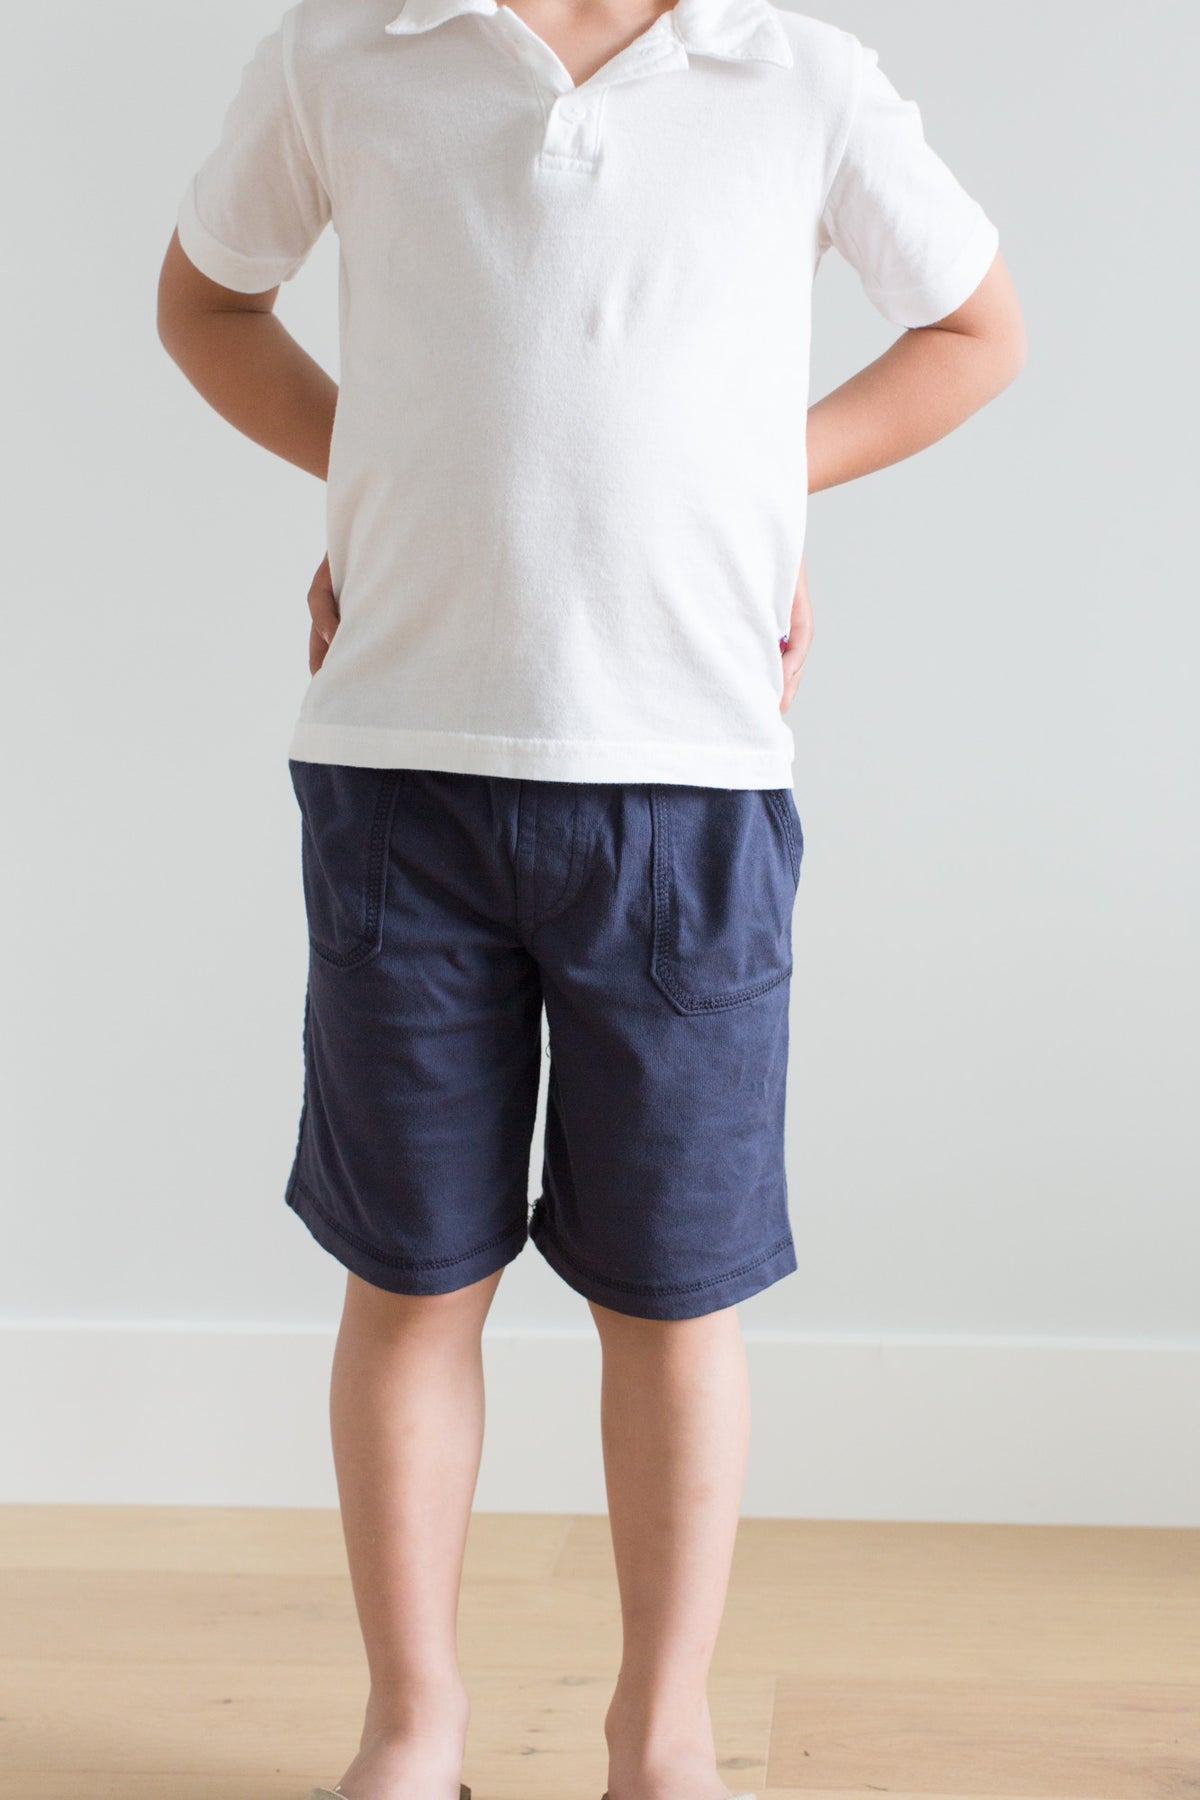 Boys Soft Cotton UPF 50+ 3 -Pocket Jersey Shorts | White